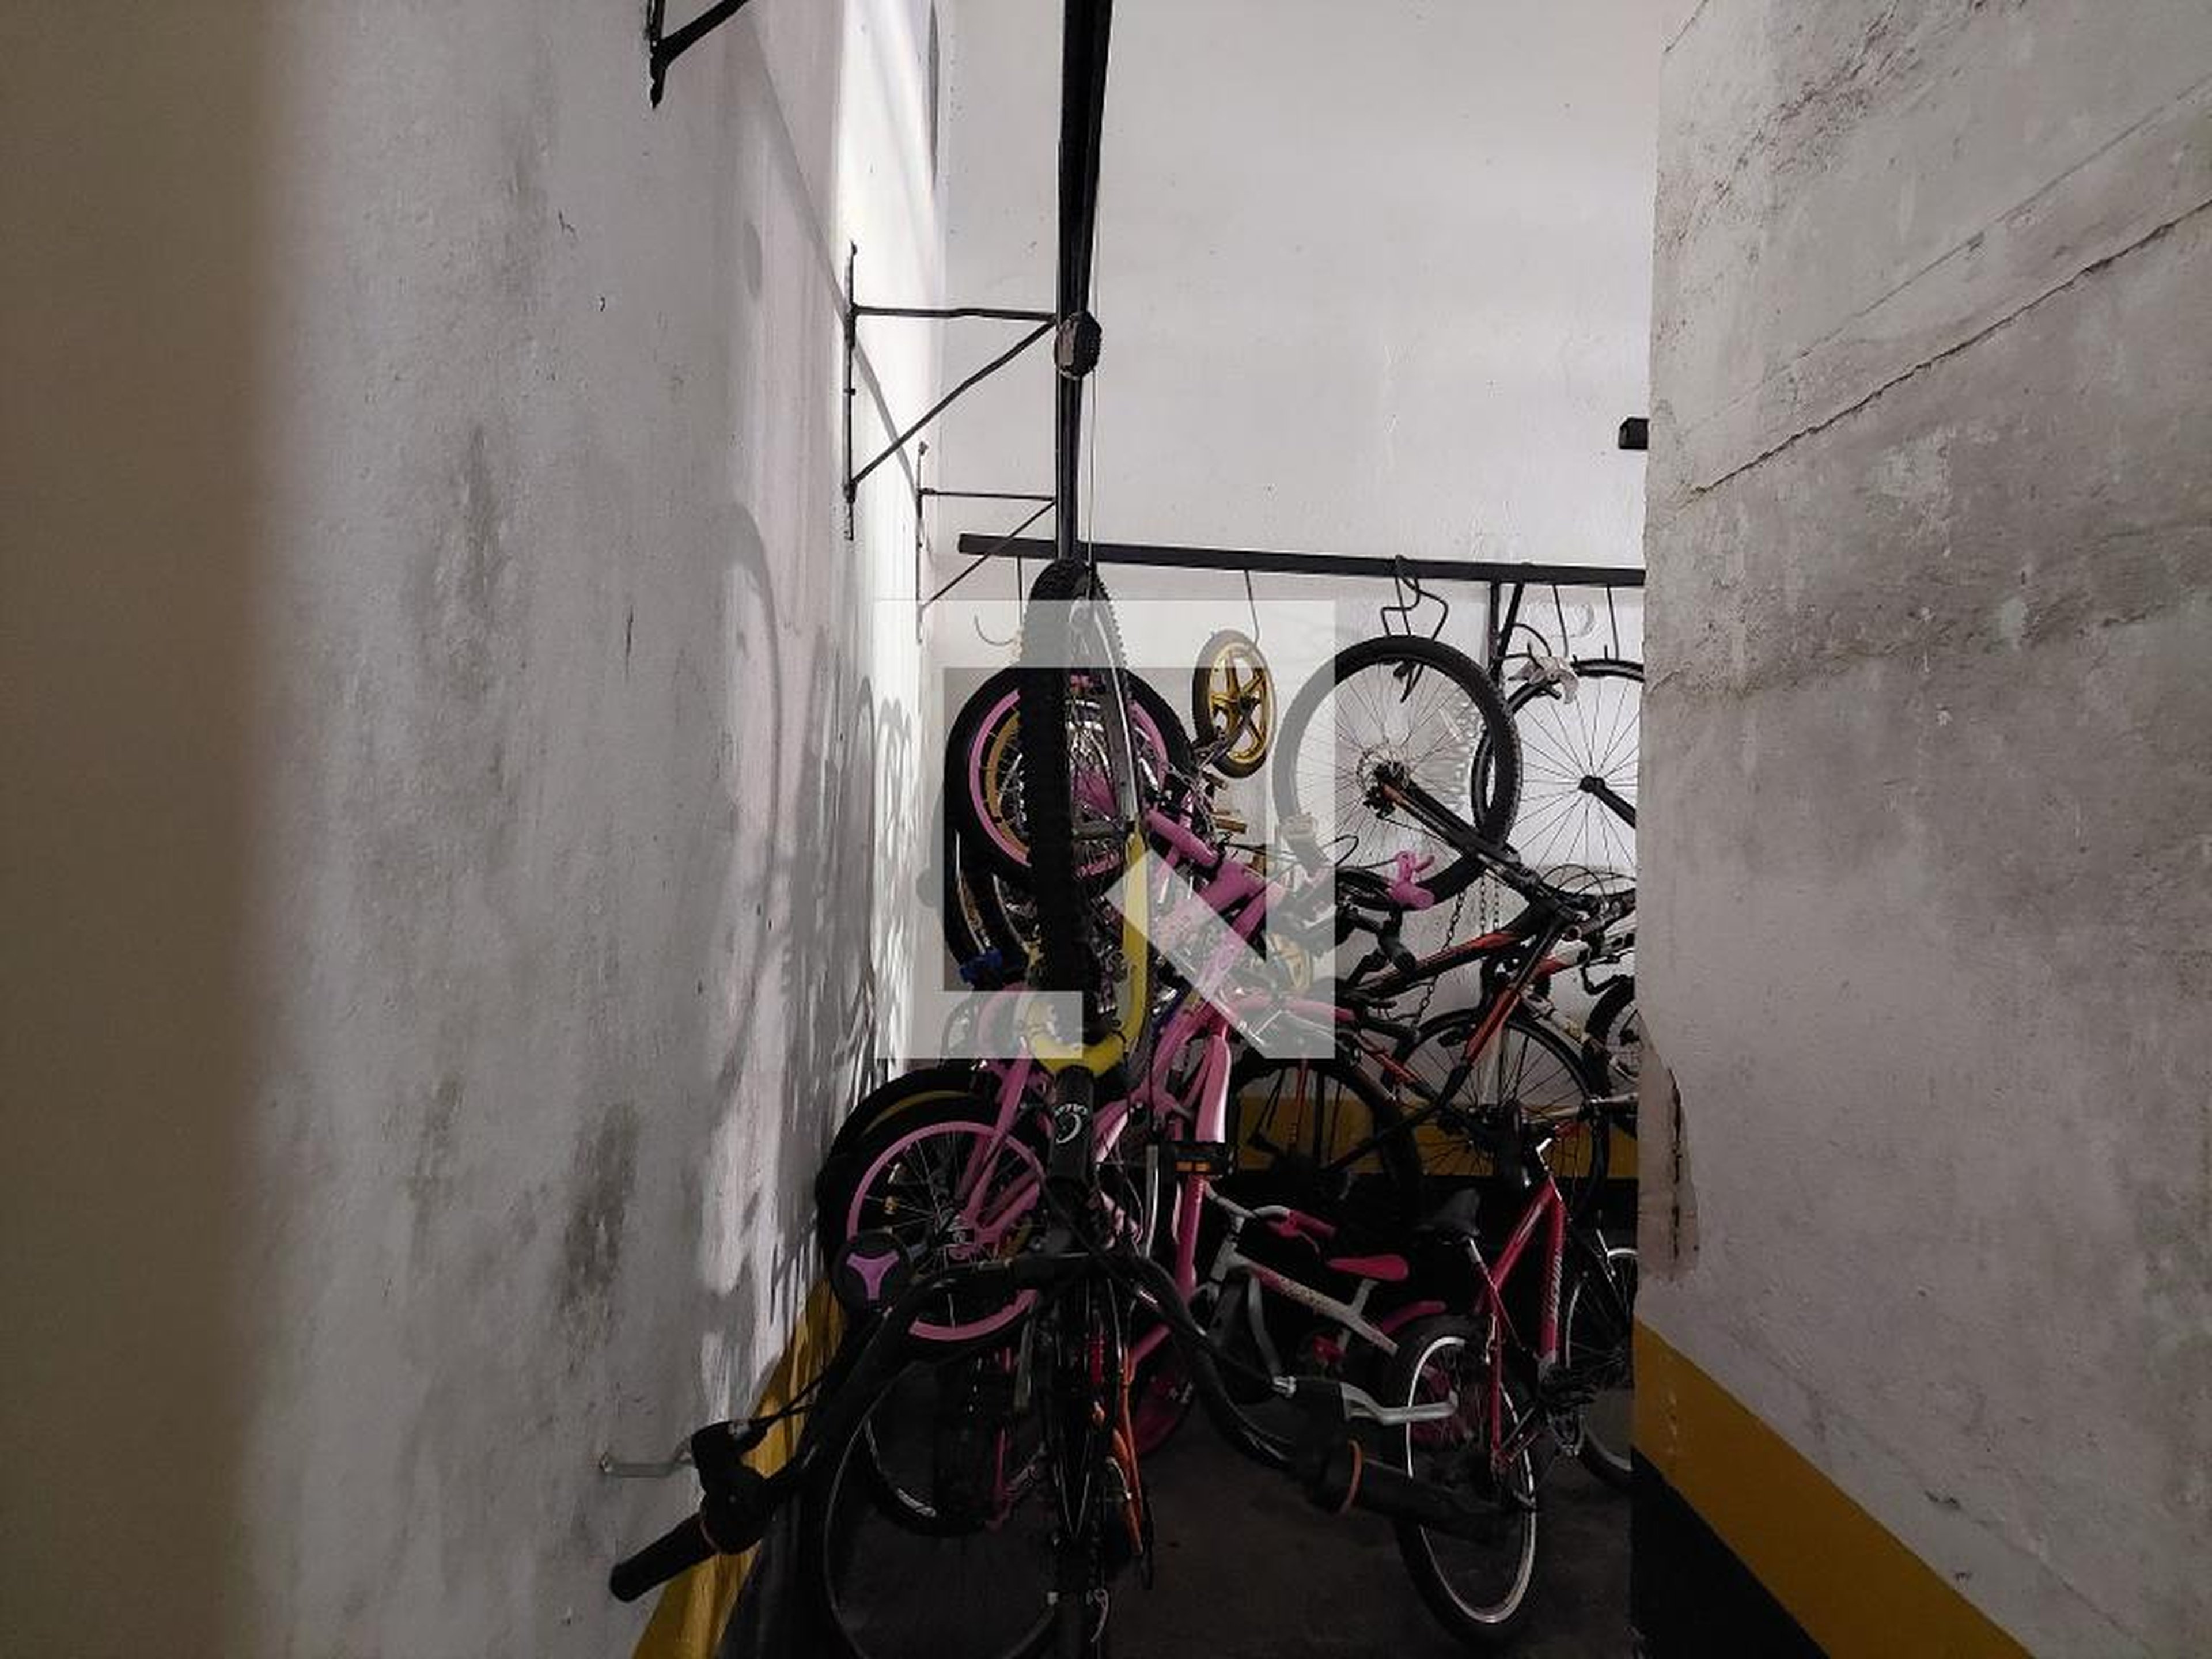 Bicicletario - Edifício Ana Luíza